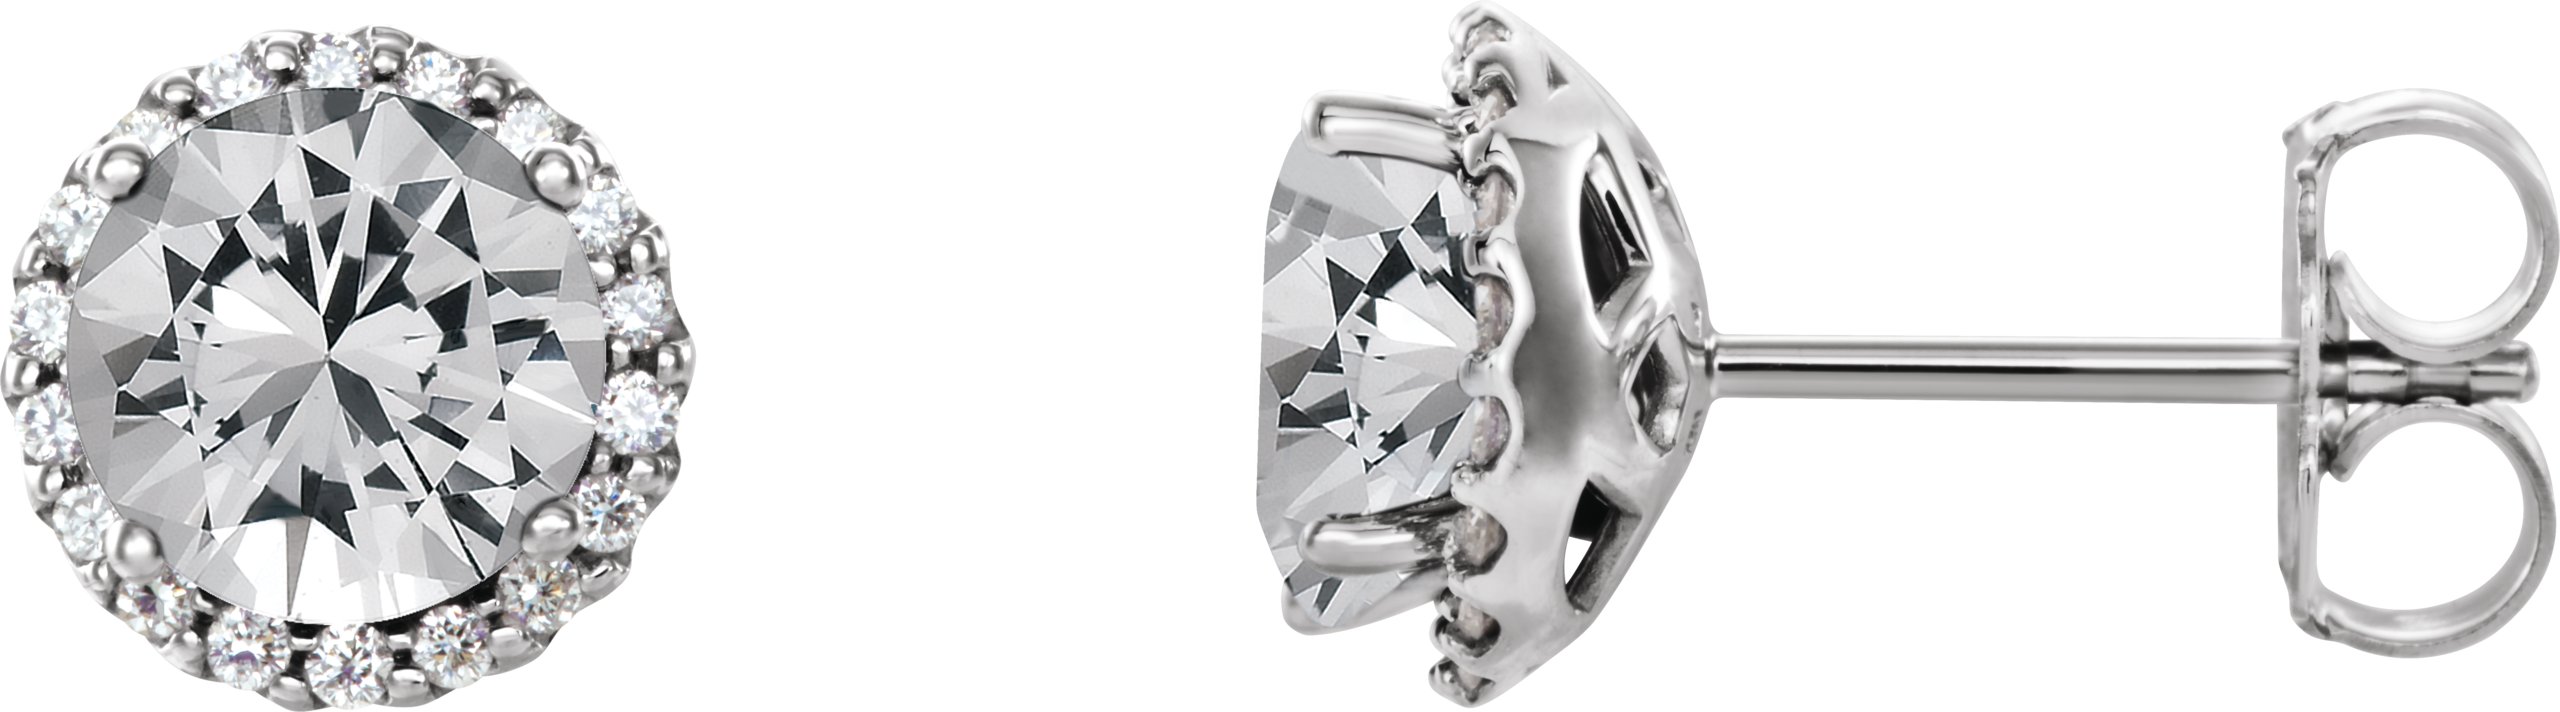 14K White 1.33 CTW Diamond Earrings Ref 16635503